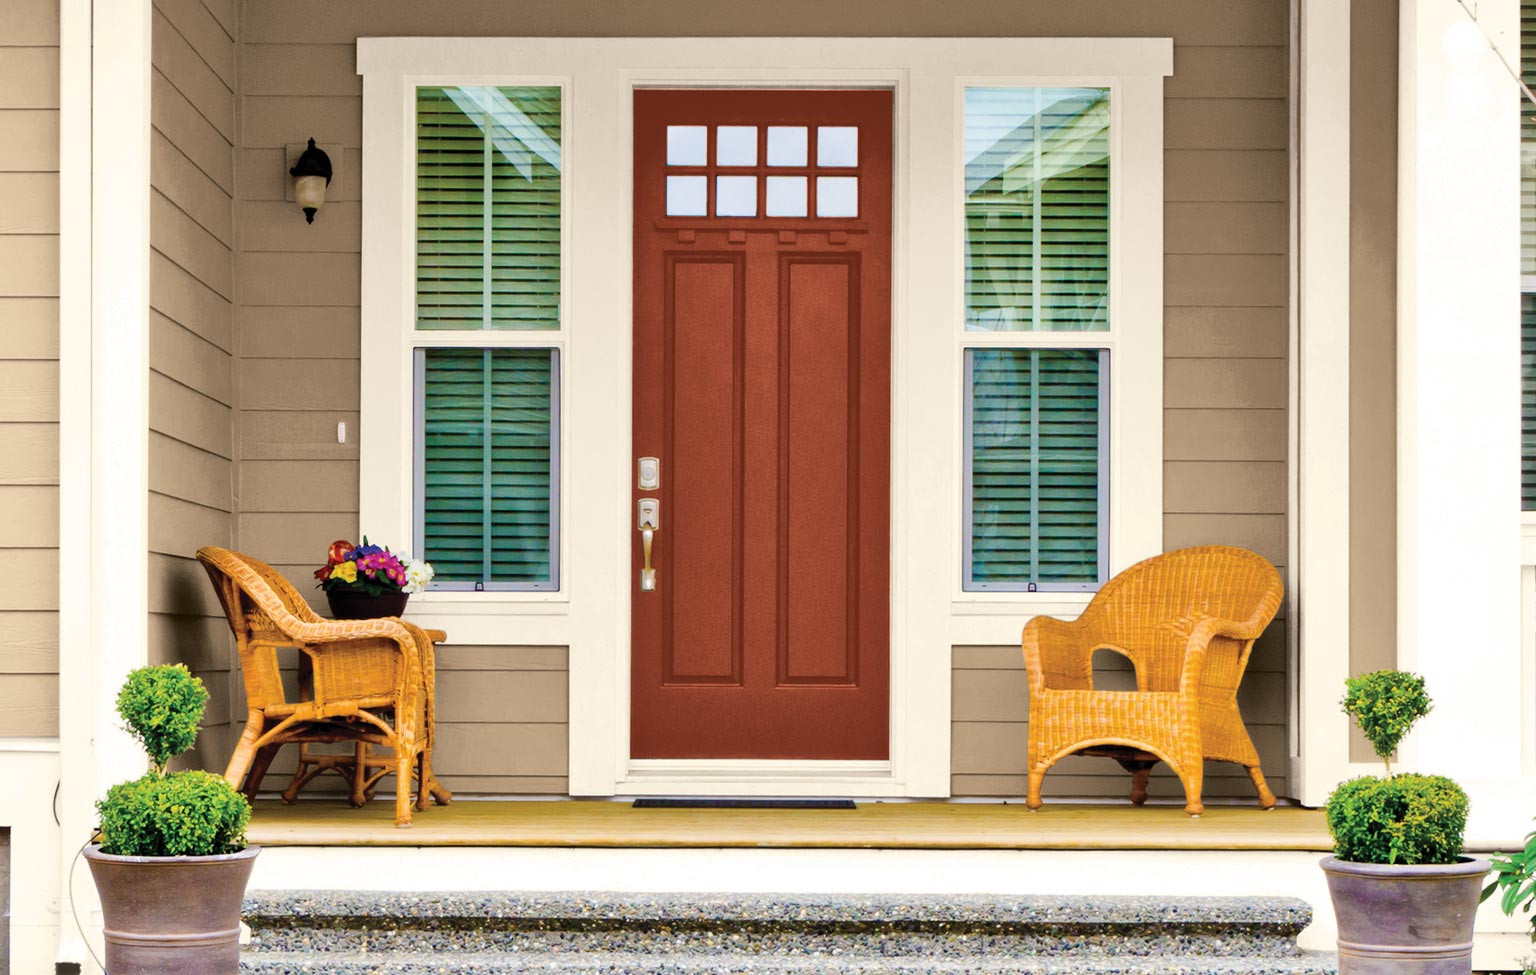 Best ideas about Front Door Paint Colors
. Save or Pin Beautiful Front Door Paint Colors Home Decorating Now.